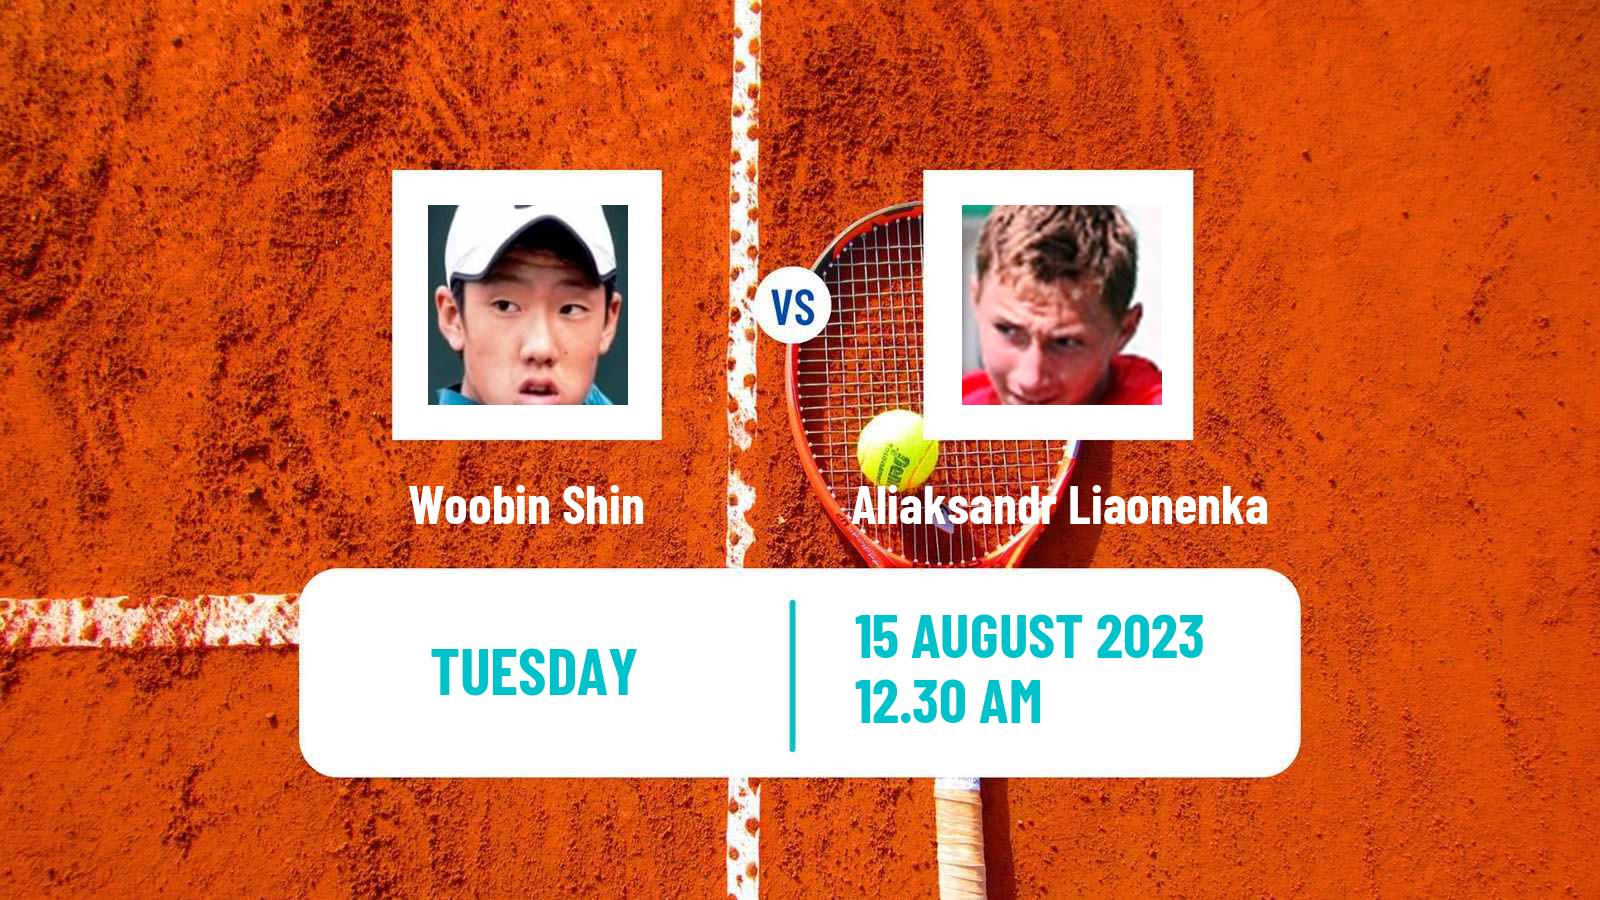 Tennis ITF M25 Yinchuan Men Woobin Shin - Aliaksandr Liaonenka